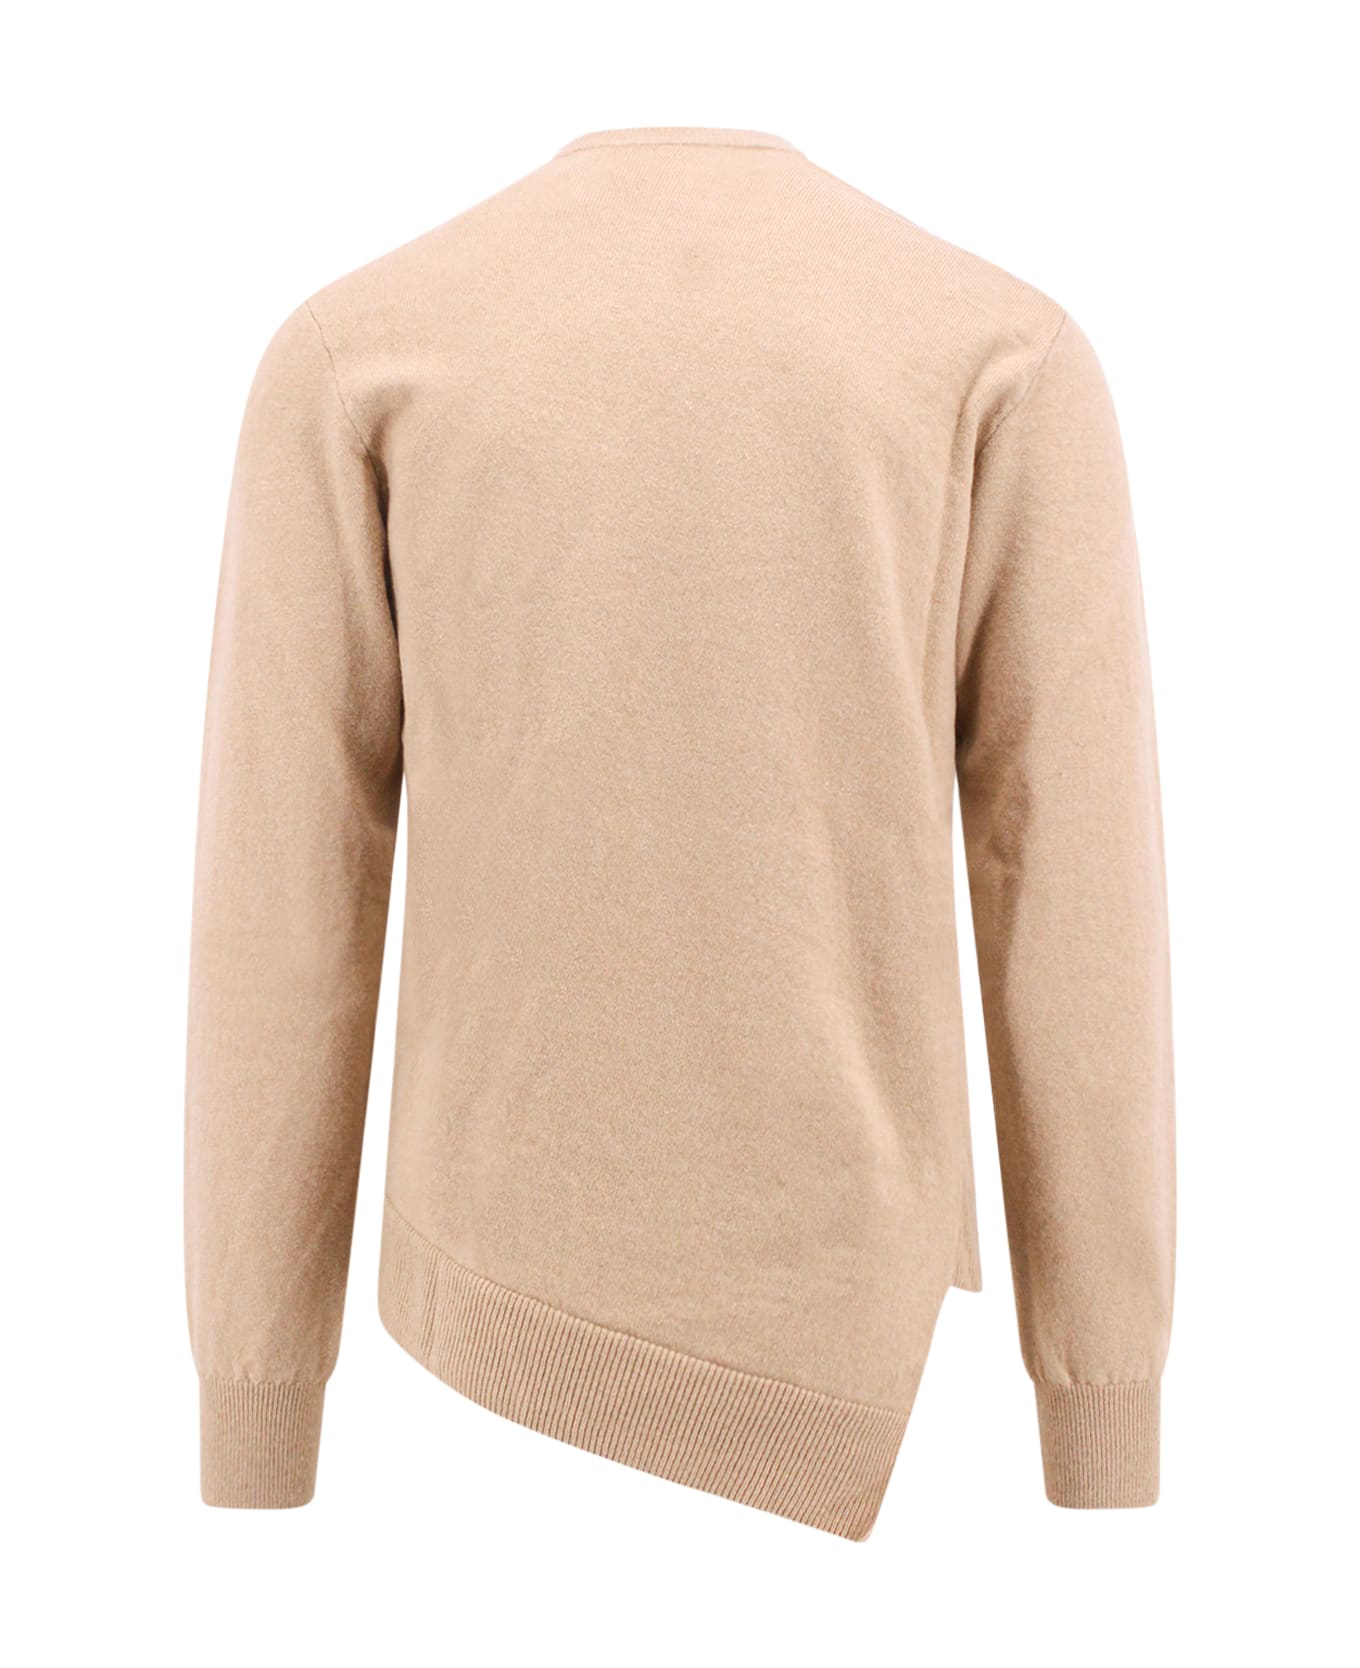 Comme des Garçons Shirt Sweater Sweater - CAMEL